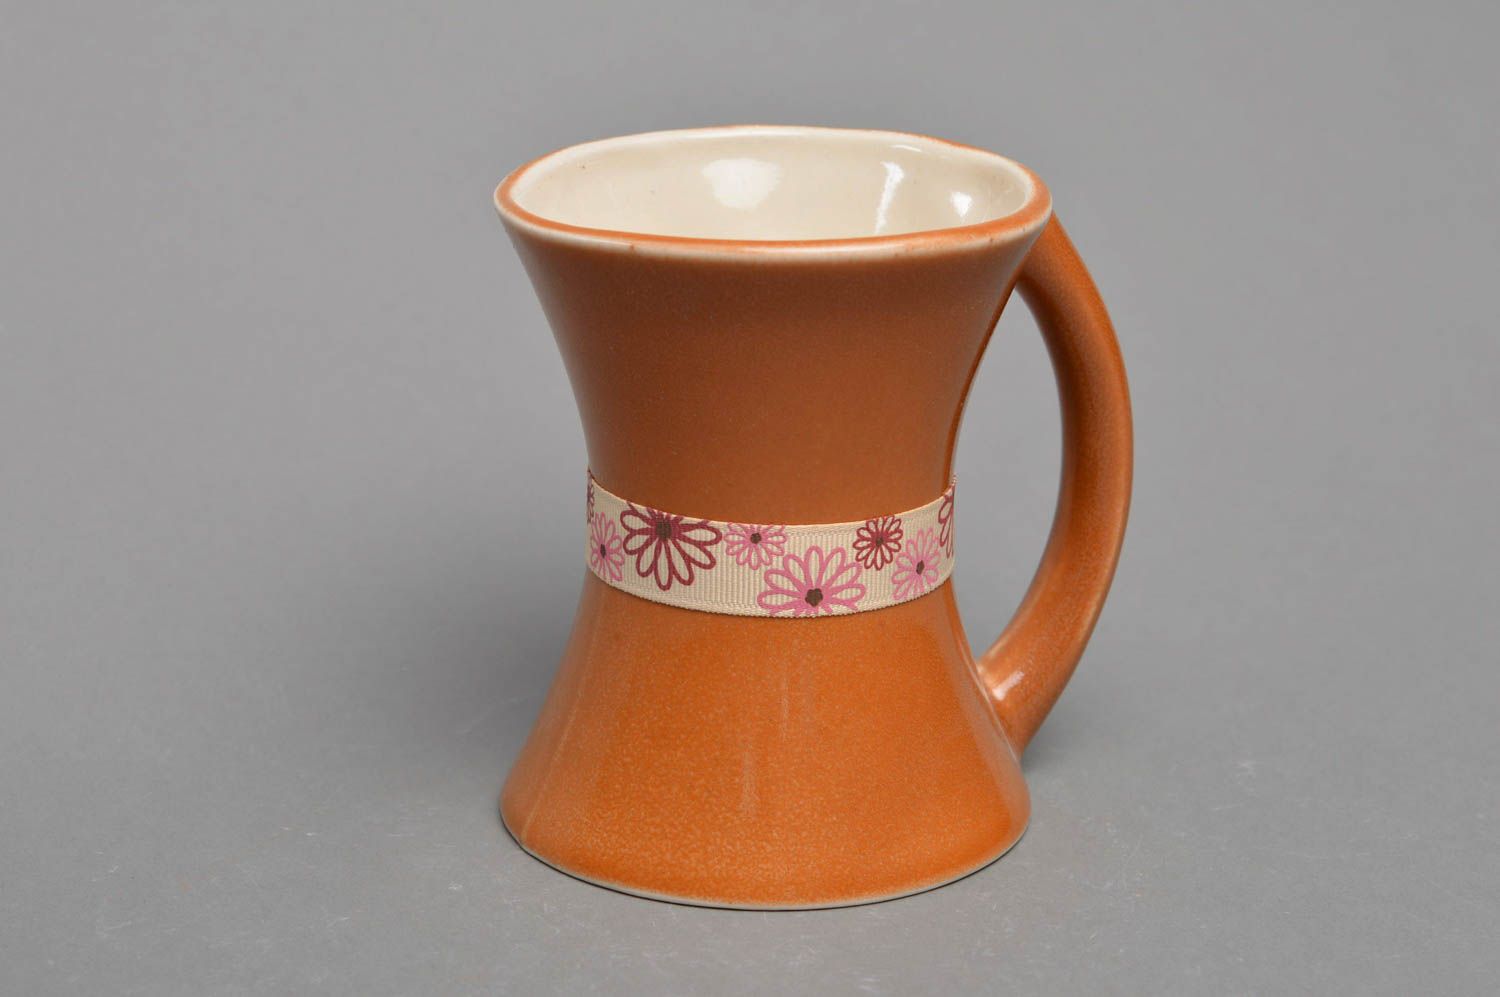 Фарфоровая чашка ручной работы необычной формы оригинальная коричневая фото 2